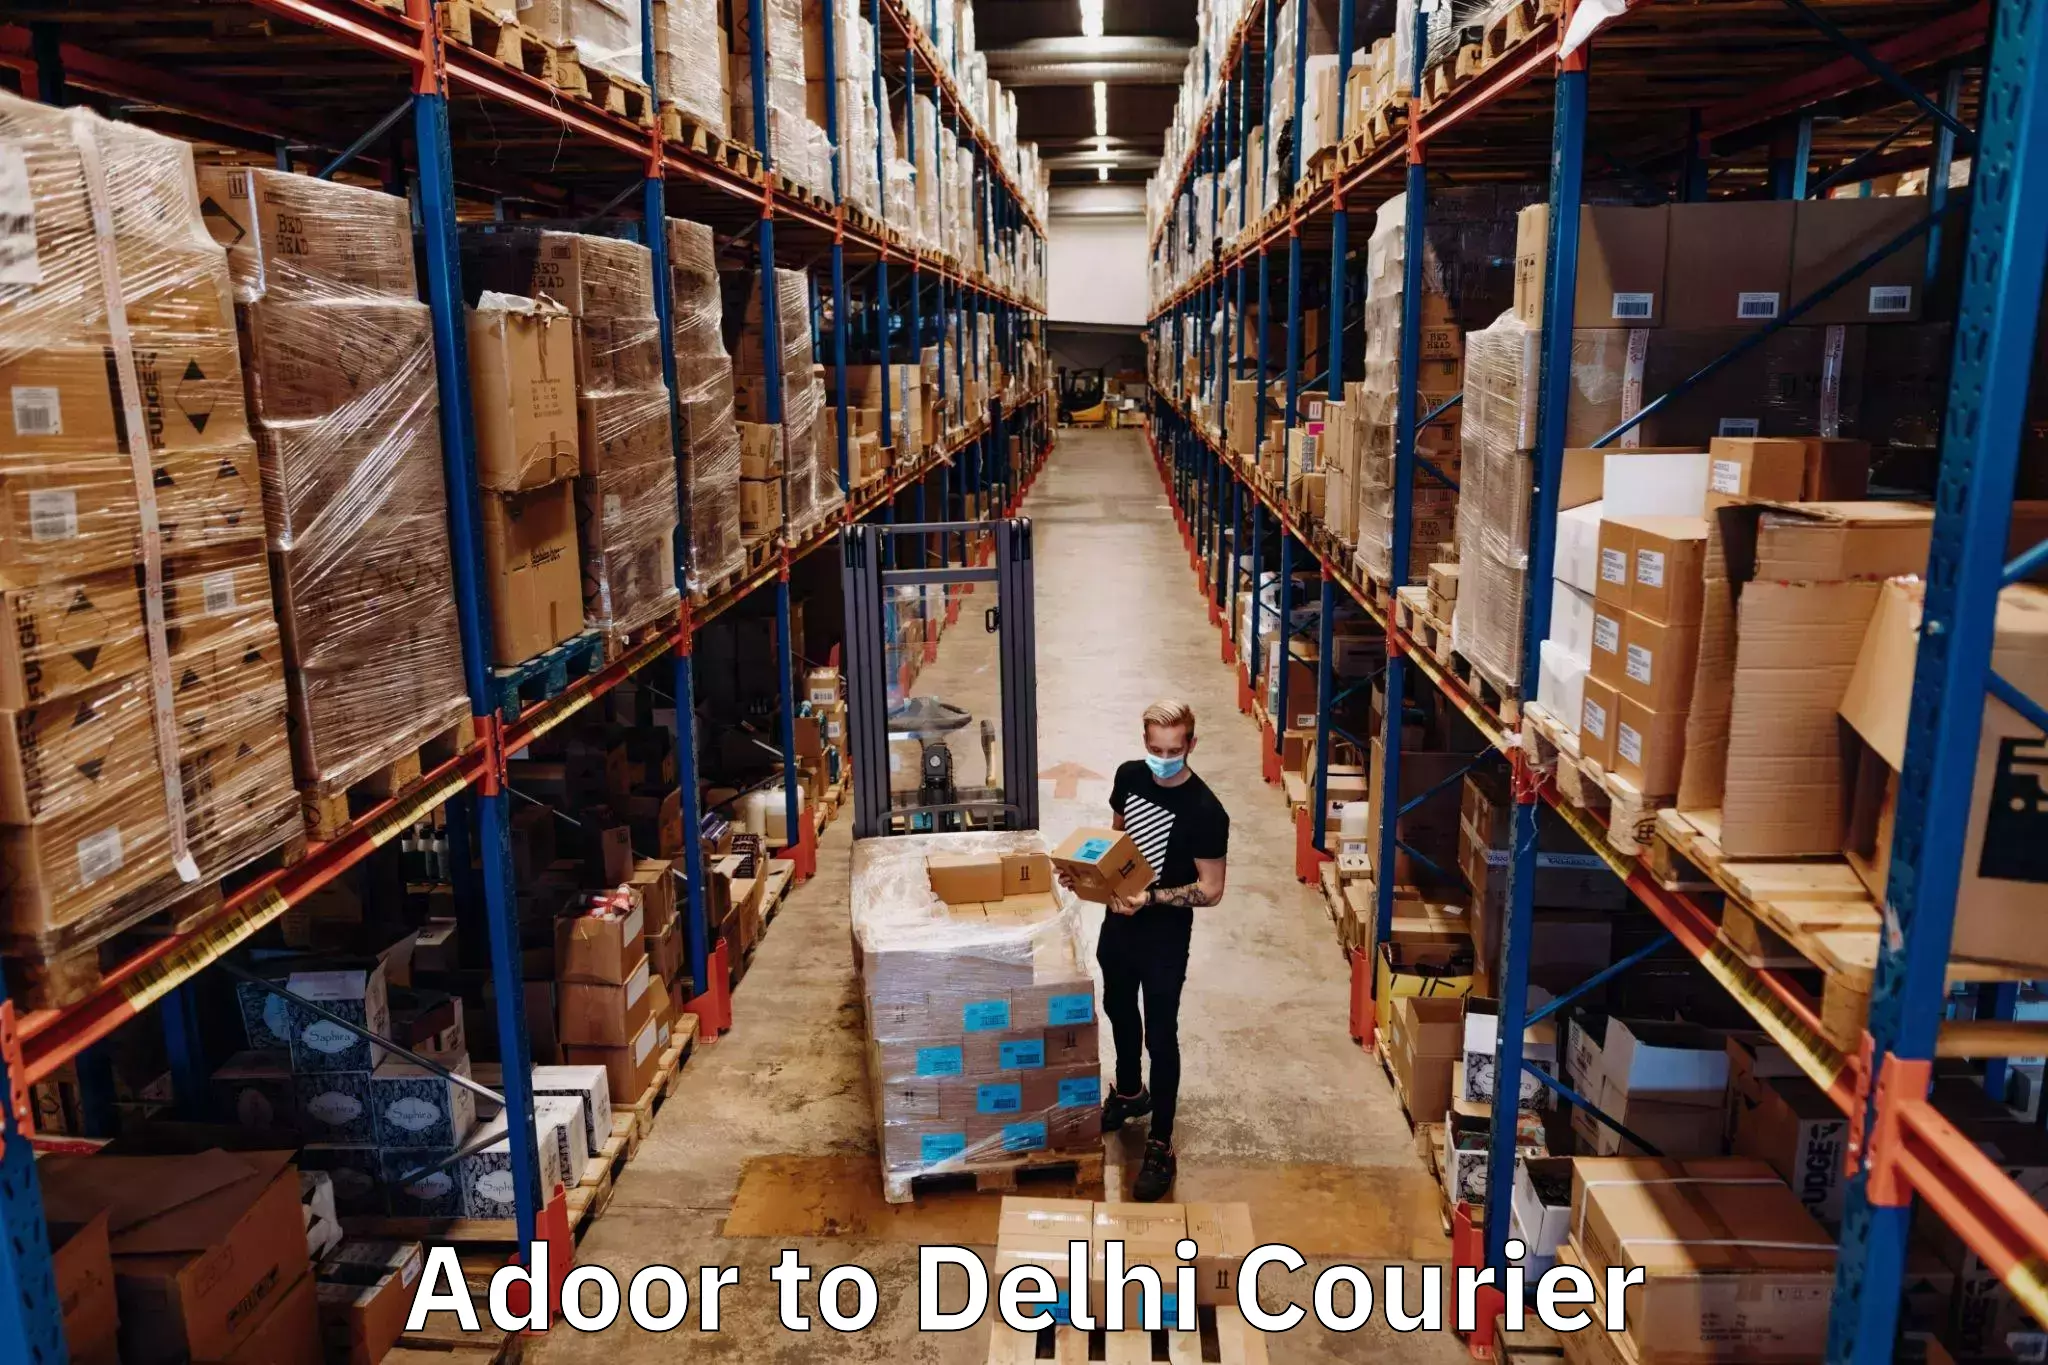 Express delivery capabilities Adoor to Delhi